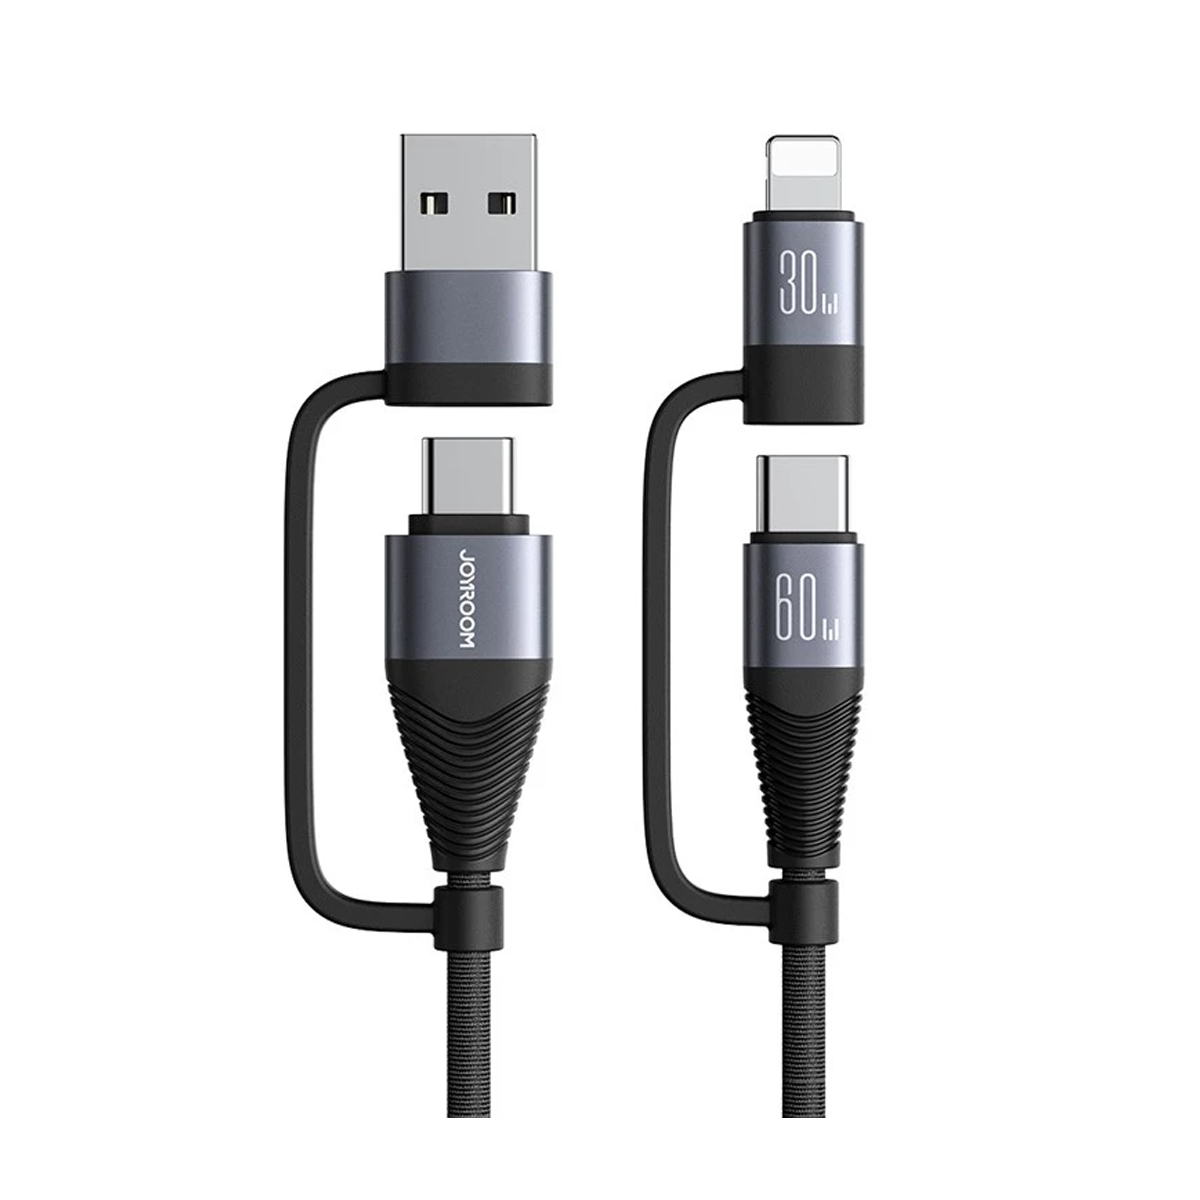  کابل تبدیل USB/USB-C به لایتنینگ/USB-C جوی روم مدل SA37-2T2 طول 1.2 متر-------فعال نشود-small-image